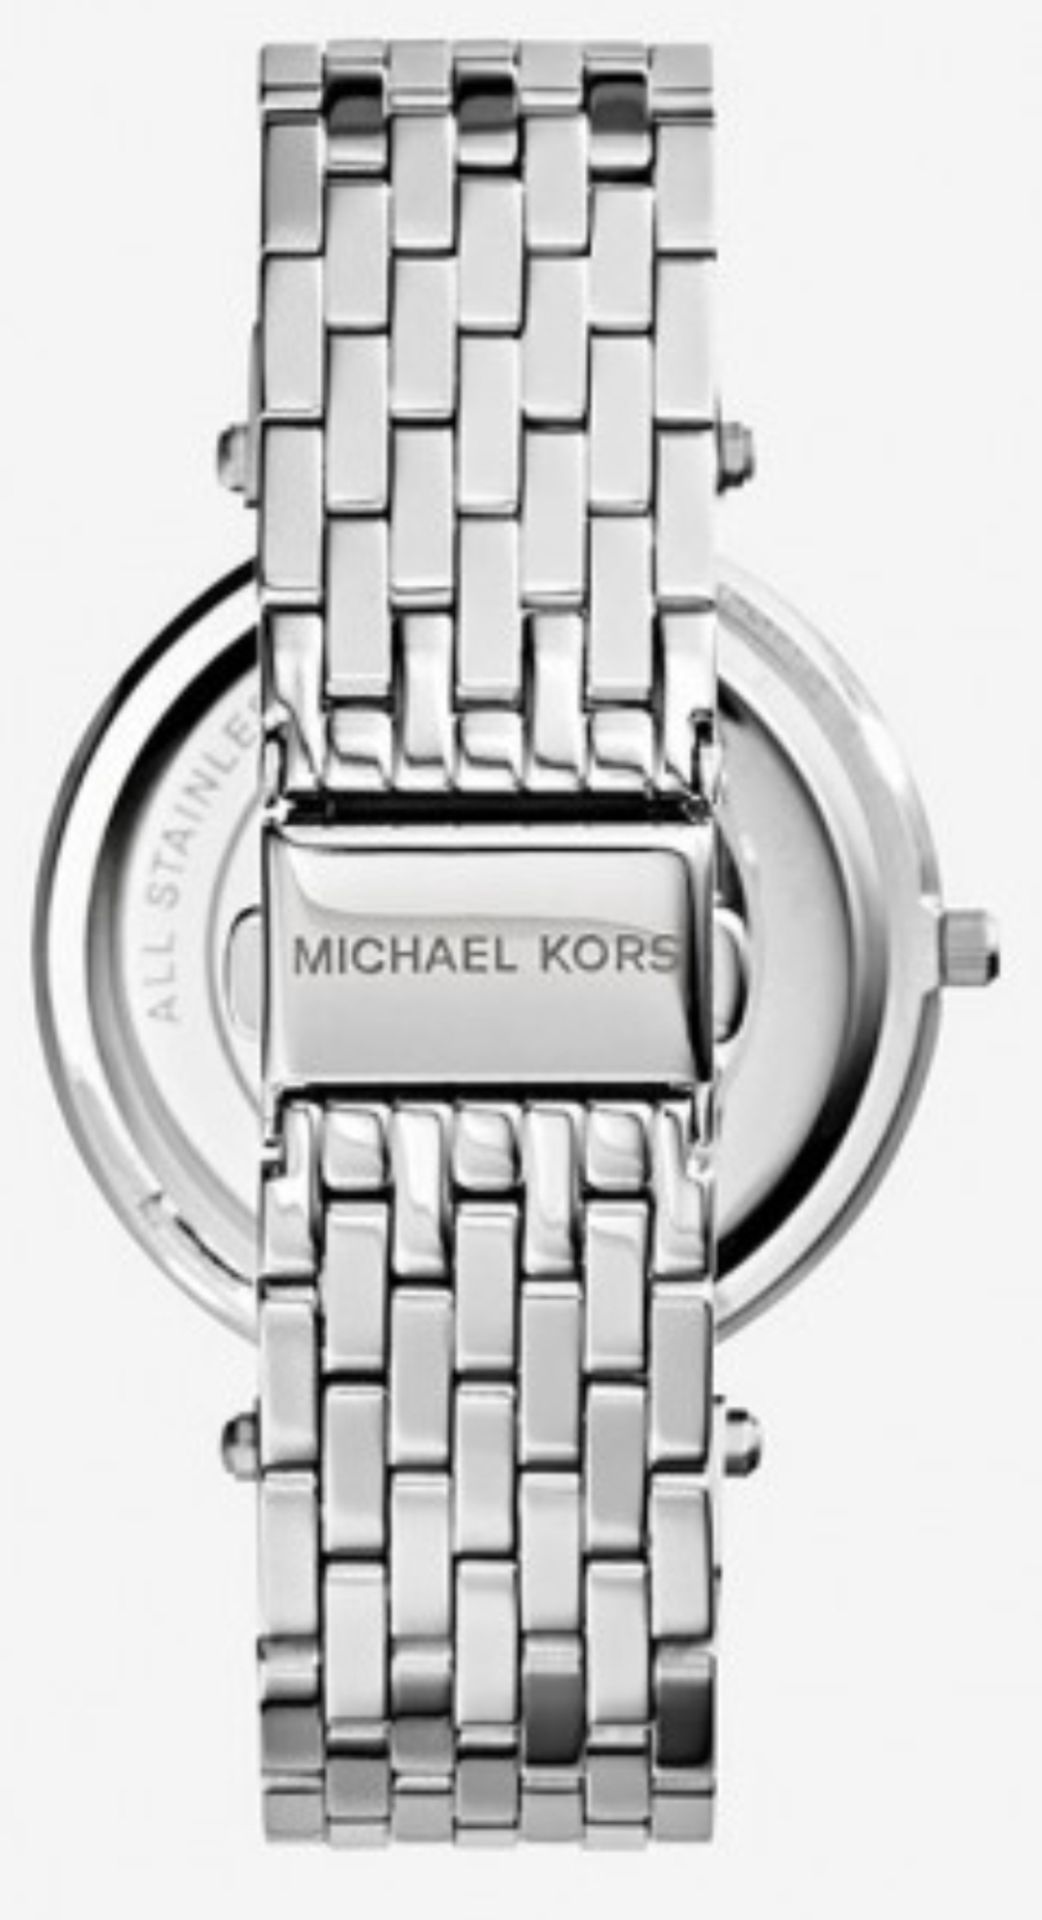 Michael Kors MK3190 Darci Silver Ladies Watch - Image 7 of 8